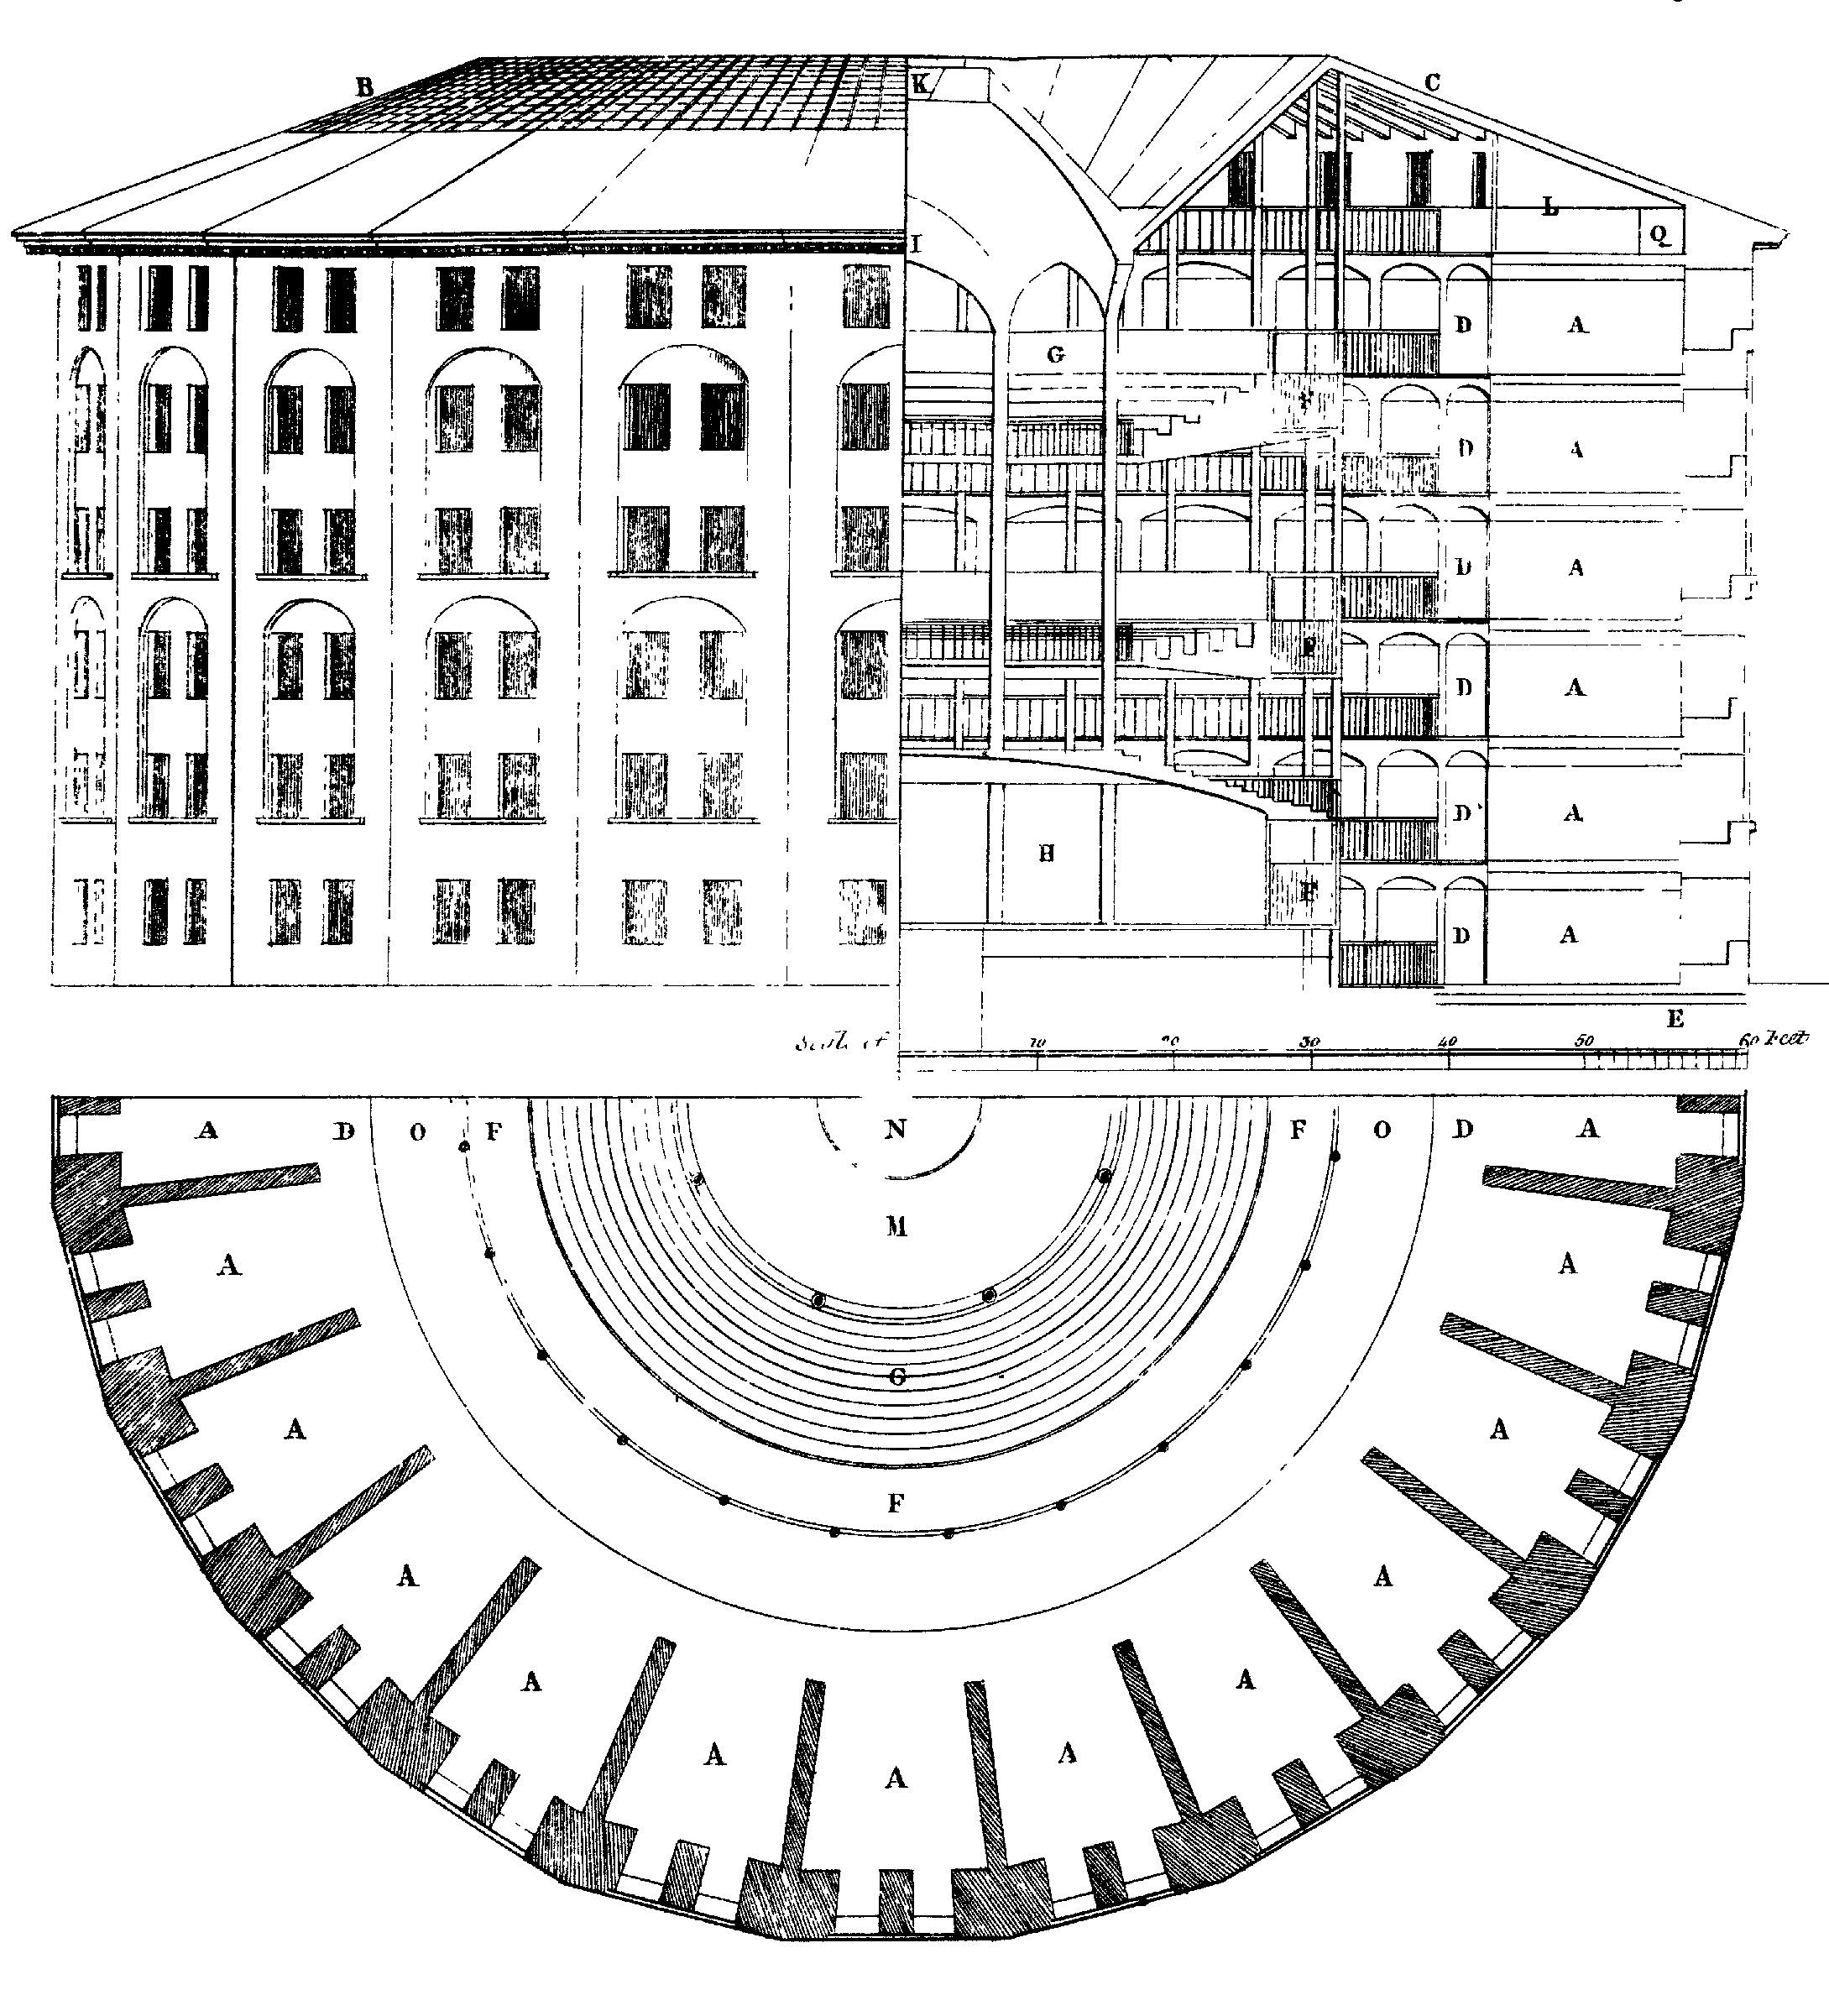 Abbildung 6.3: Entwurf aus dem Panoptikum Gefängnis, zuerst von Jeremy Bentham vorgeschlagen. In der Mitte gibt es eine unsichtbare Seher, der das Verhalten von jeder beobachten kann und nicht beobachtet werden kann. Zeichnung von Willey Reveley 1791. Quelle: Wikimedia Commons.